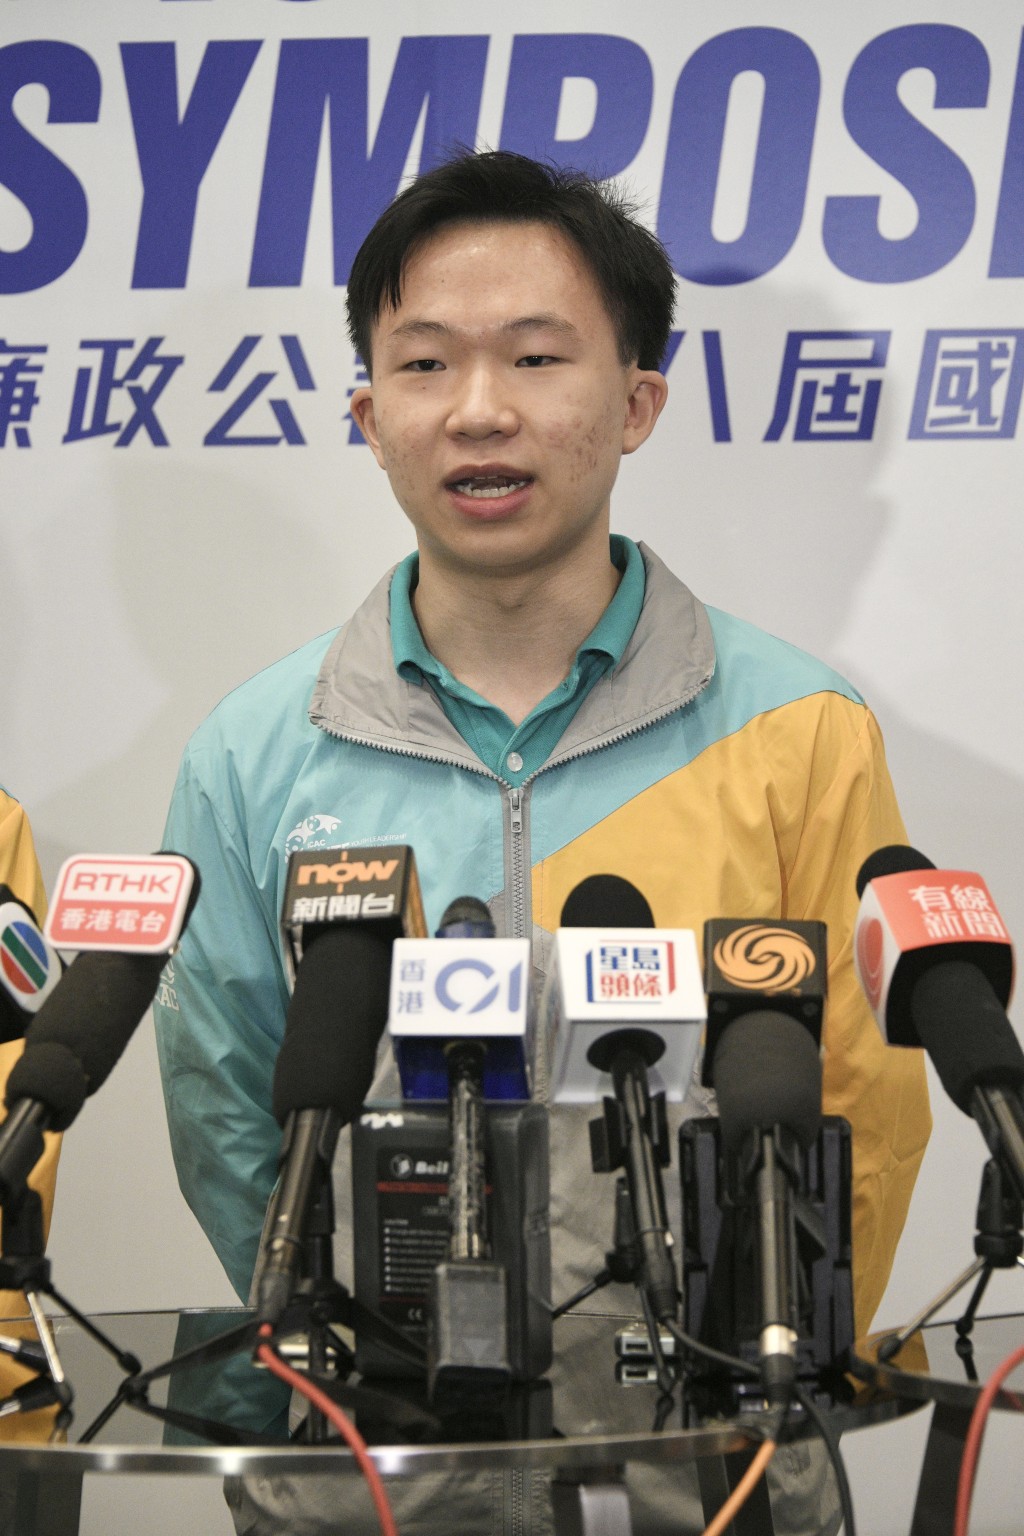 香港大学四年级学生张栢全表示，年轻人不仅是明日的领袖，亦可以是今日的领袖，为打击贪污出一份力。陈浩元摄